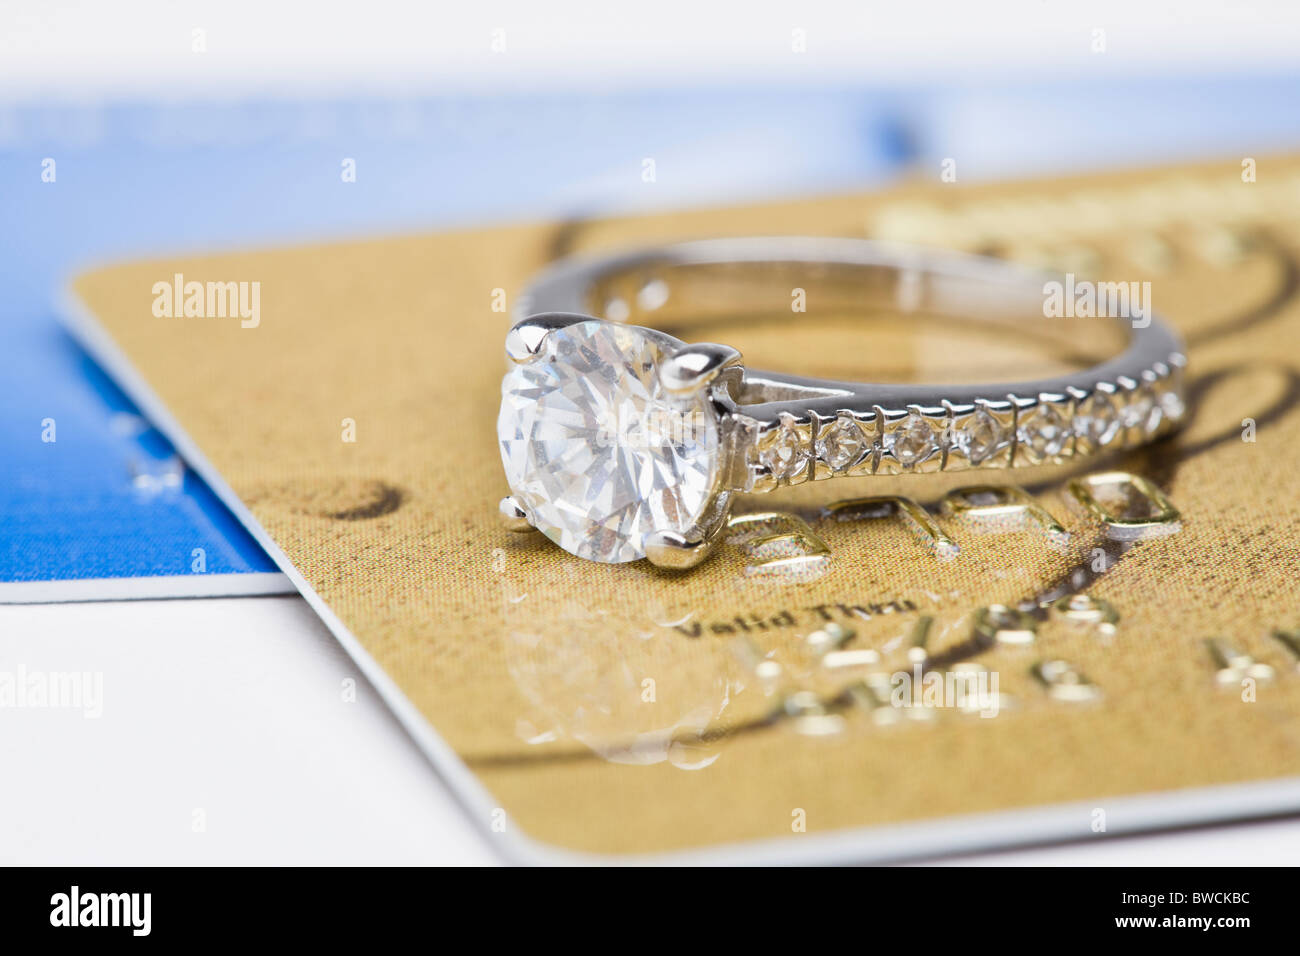 États-unis, Illinois, Metamora, anneau de diamant sur les cartes de crédit Banque D'Images